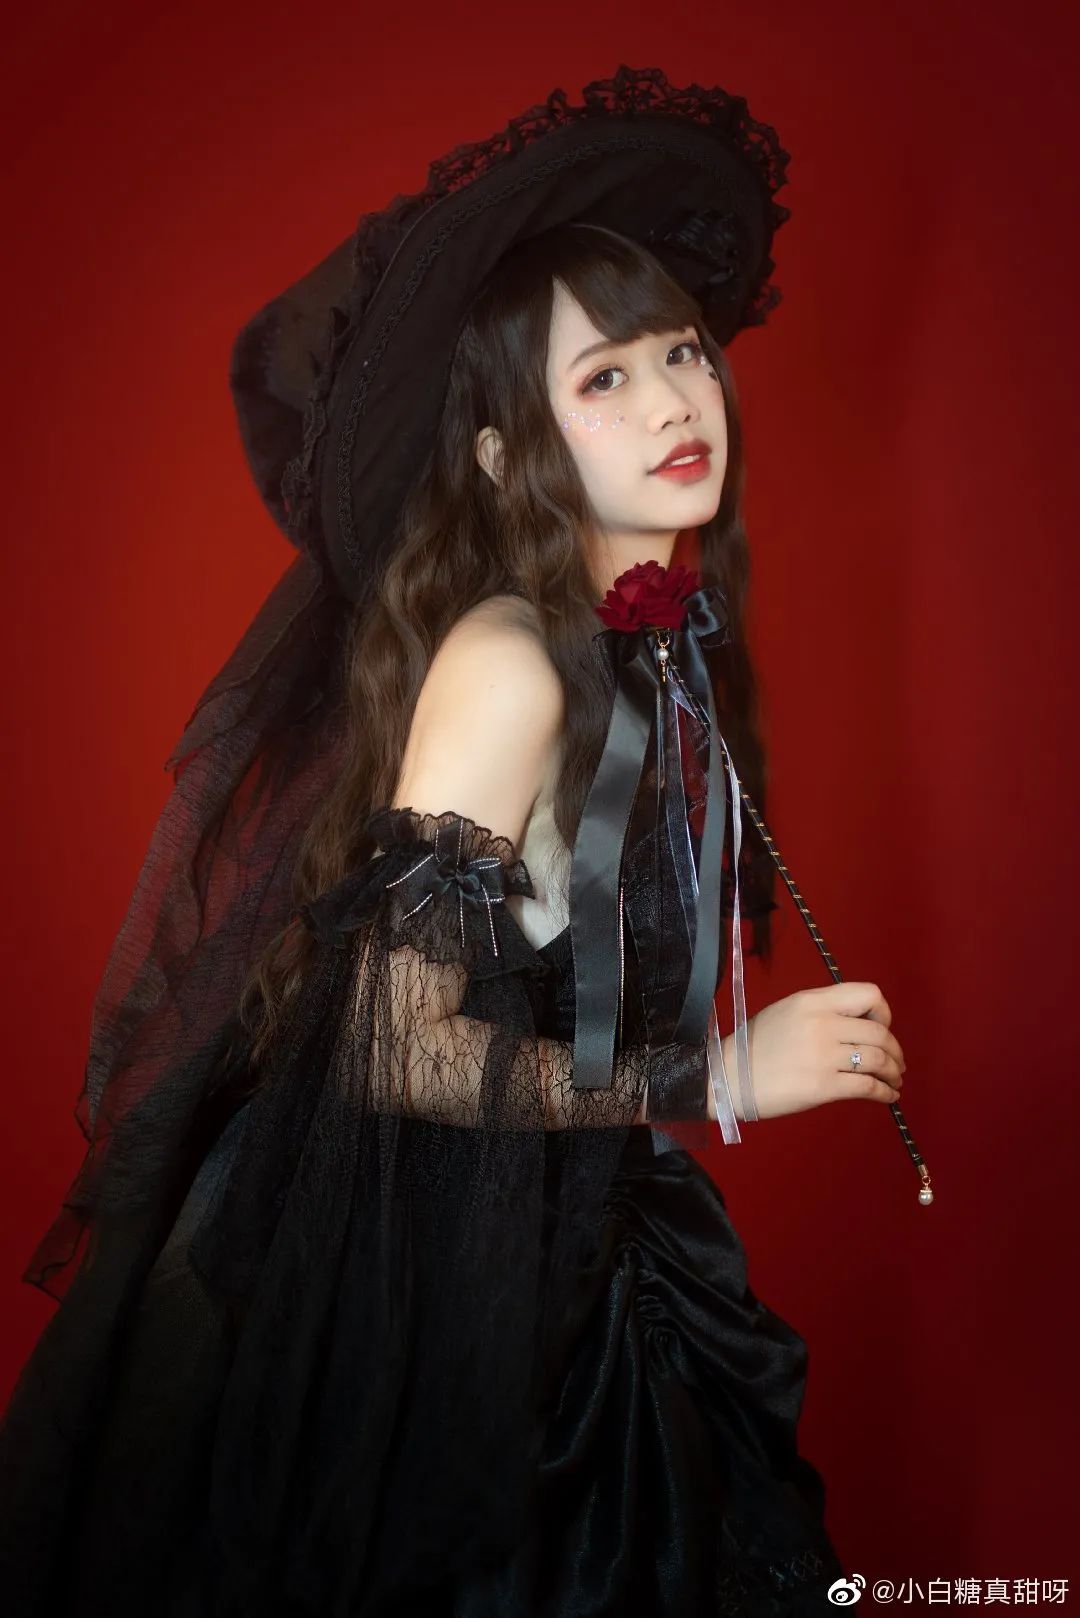 妹子摄影 – Lolita可爱猫天使，魔女笑容有点甜_图片 No.6